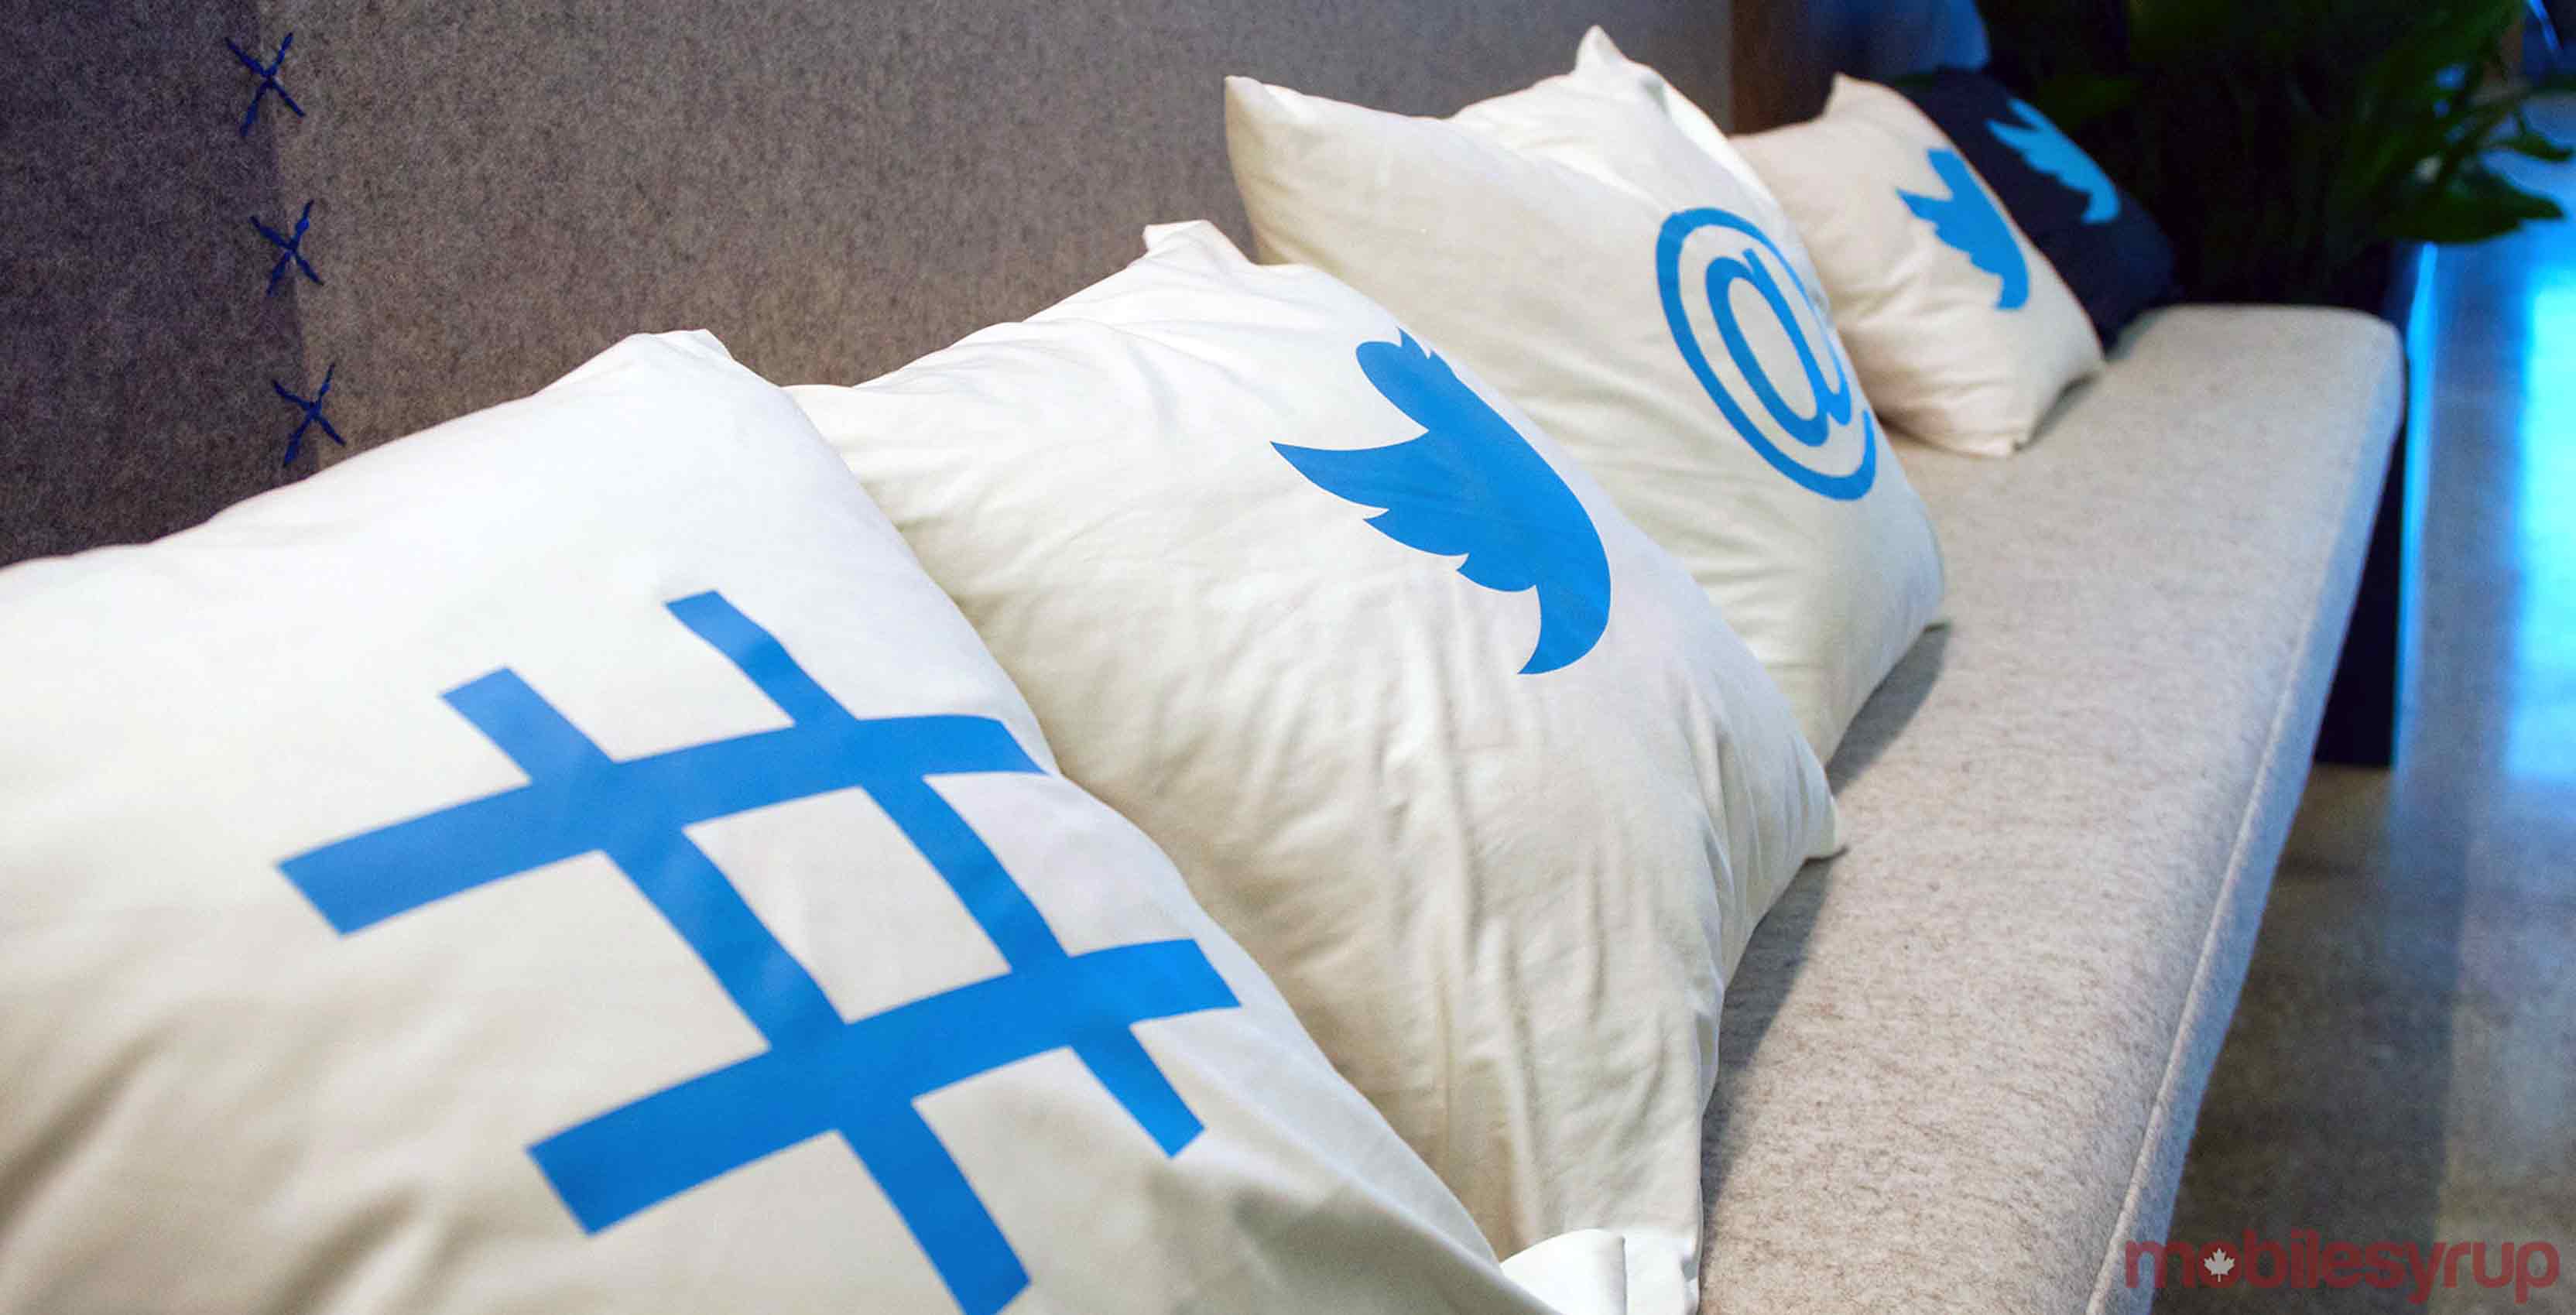 Twitter pillows